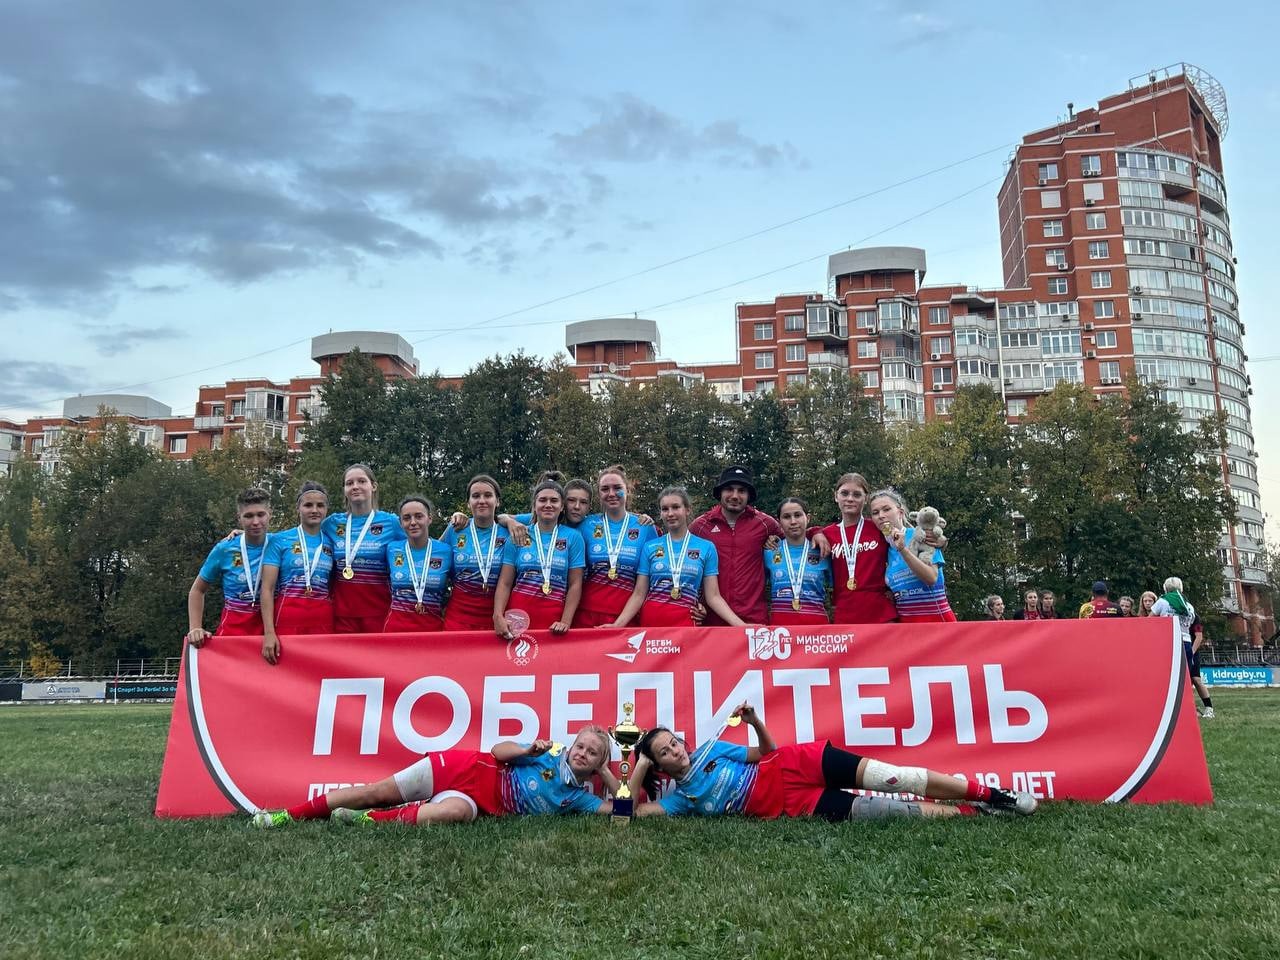 Кузбасская сборная победила на первенстве России по регби среди девушек